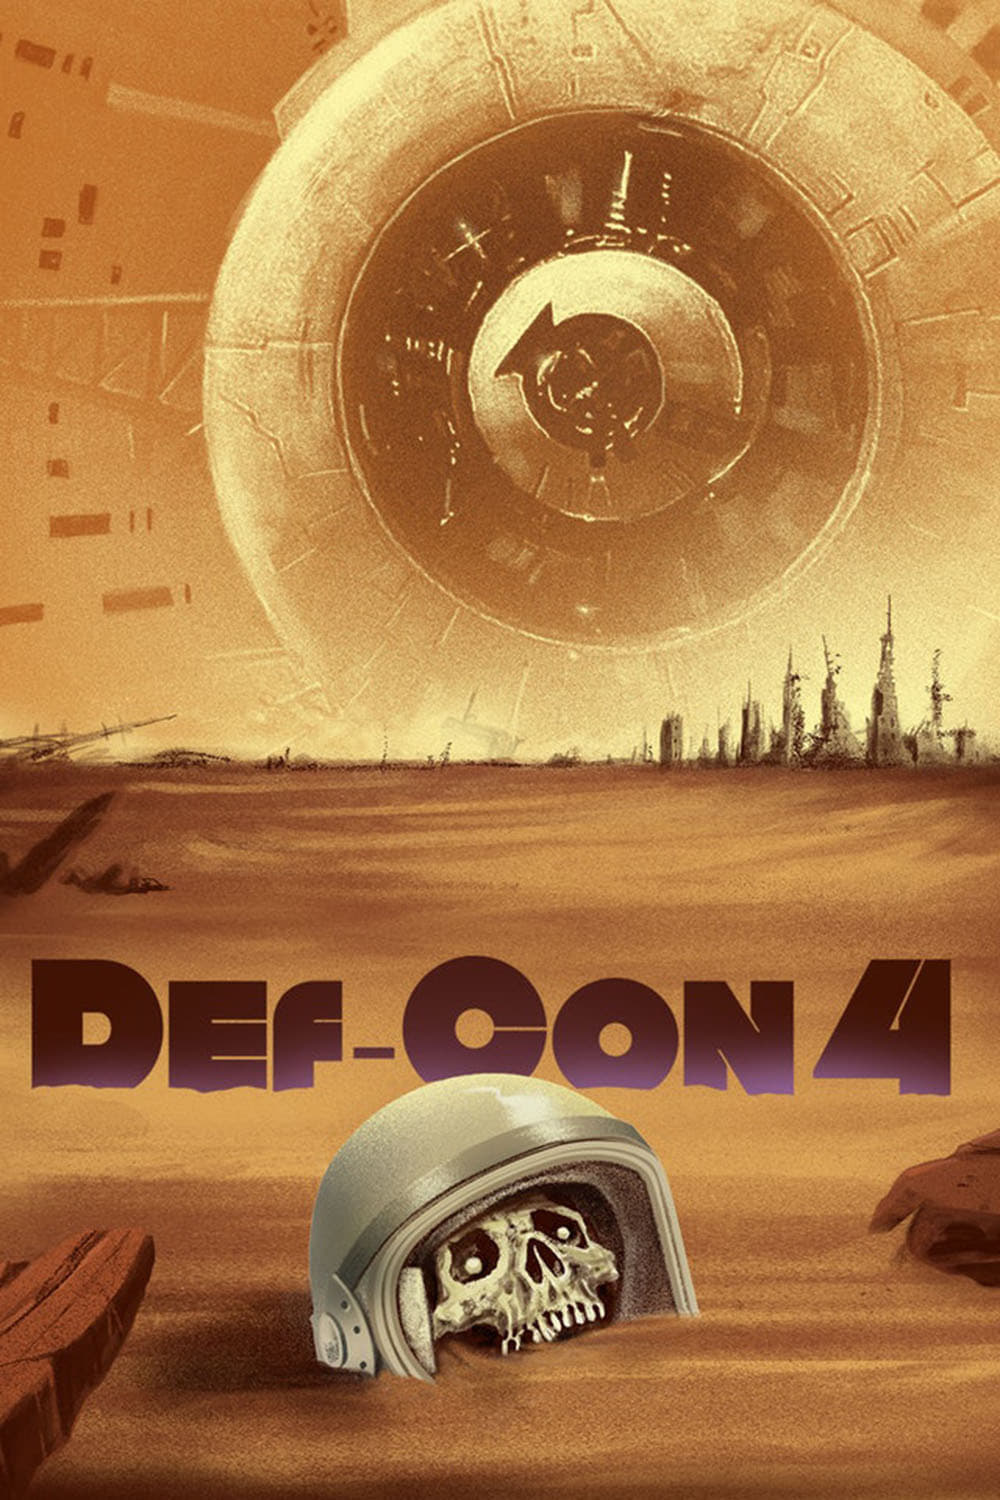 Def-Con 4 est-il disponible sur Netflix ou autre ?